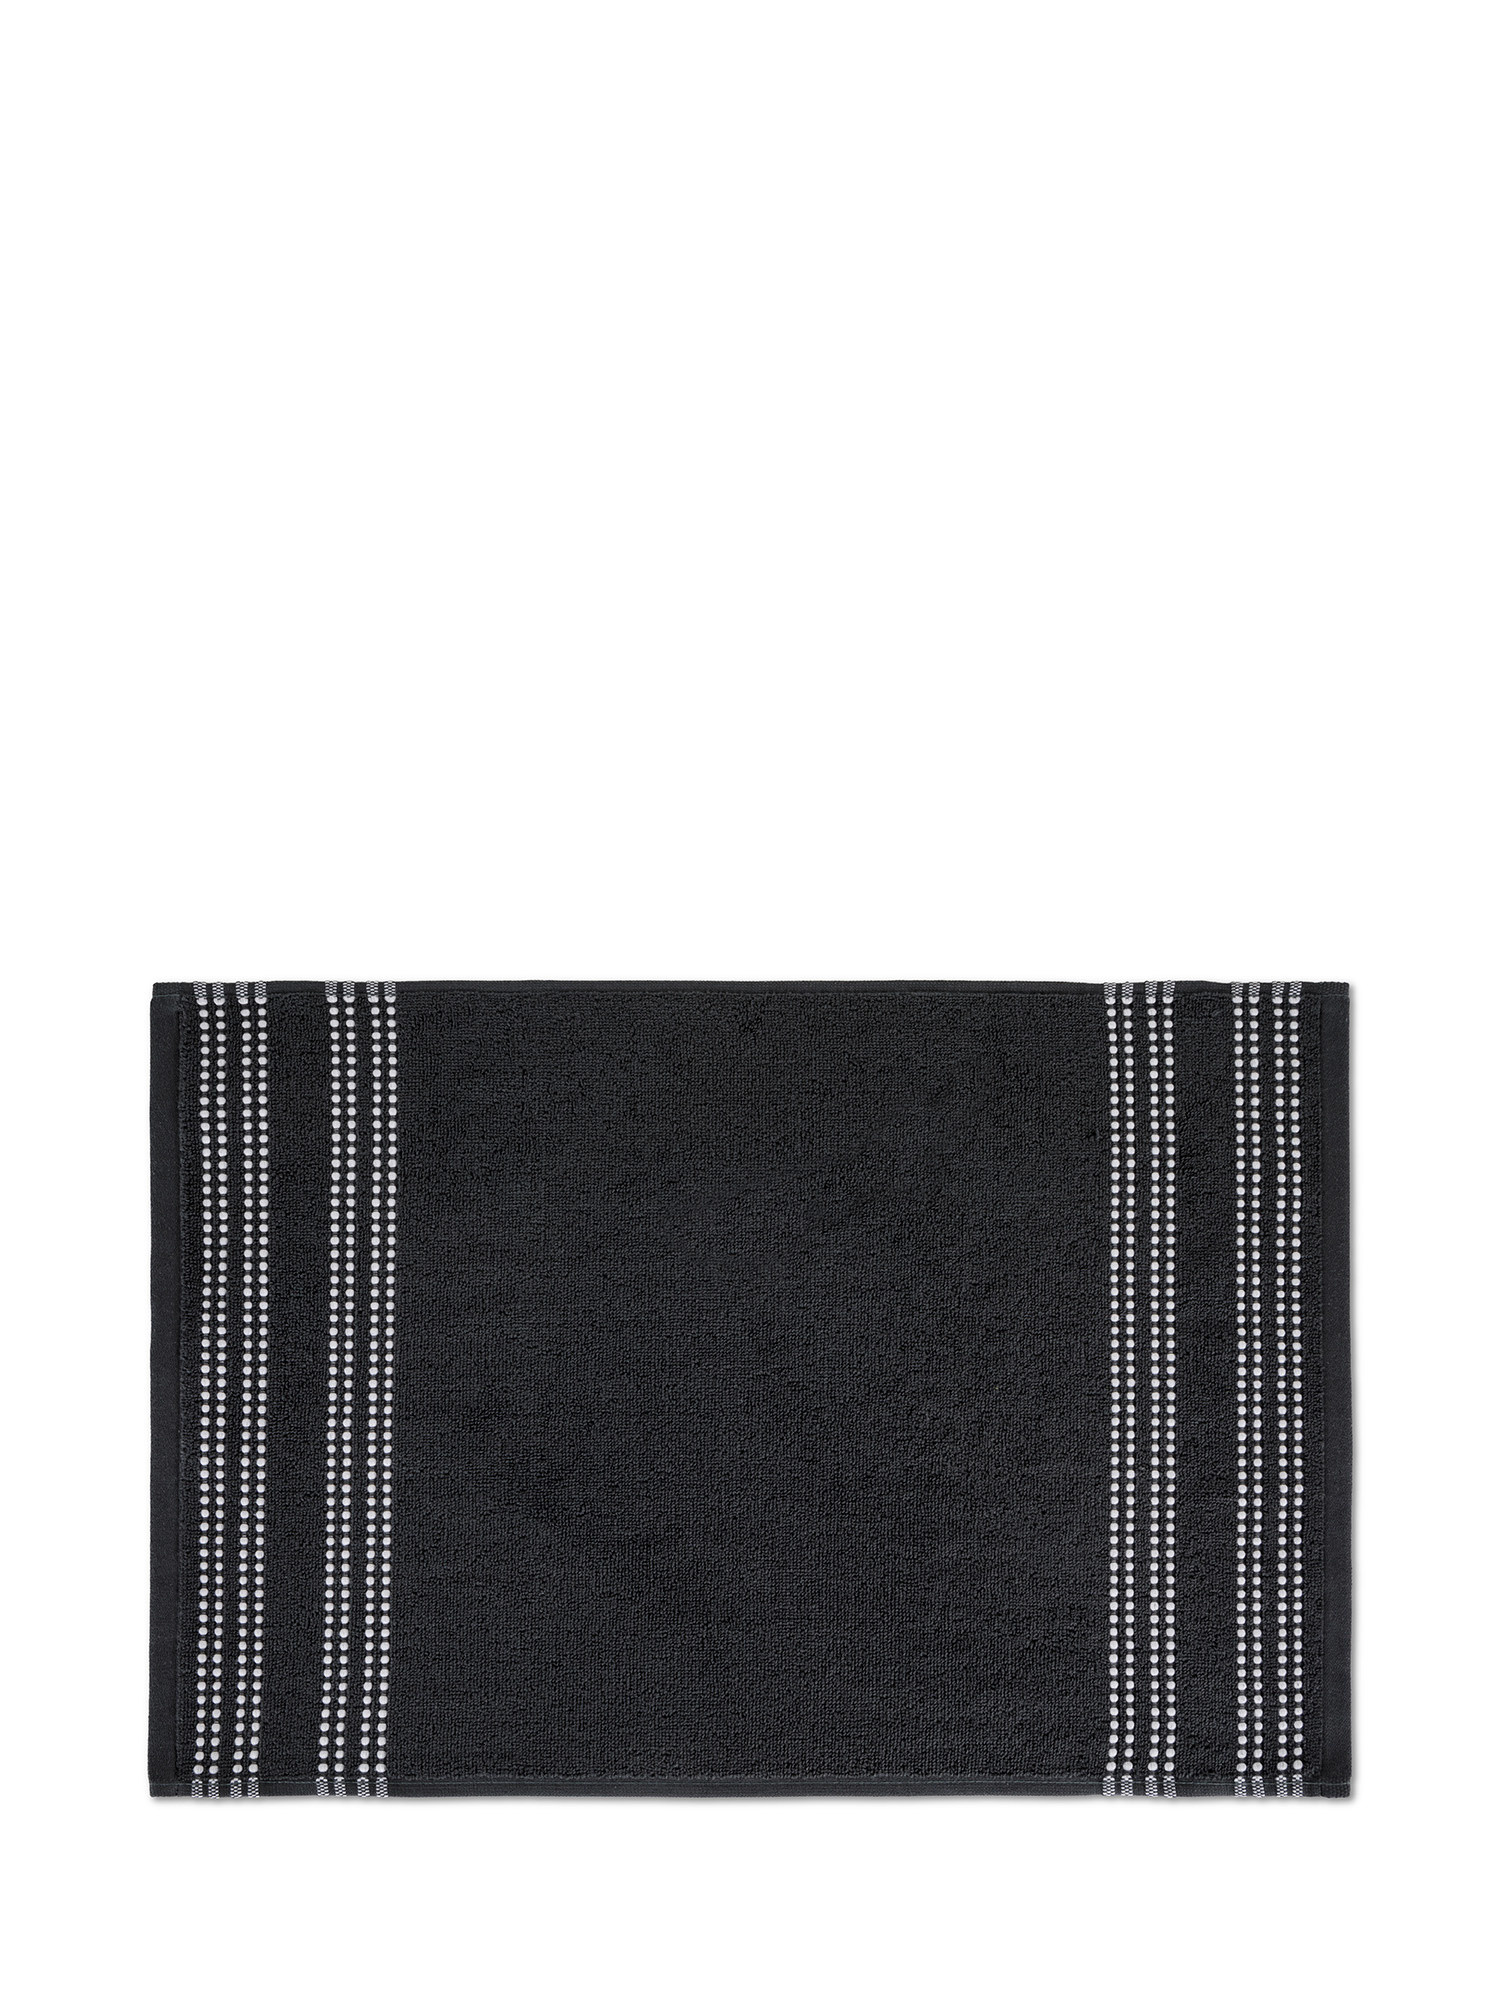 Asciugamano di puro cotone con bordo ricamato, Grigio, large image number 1